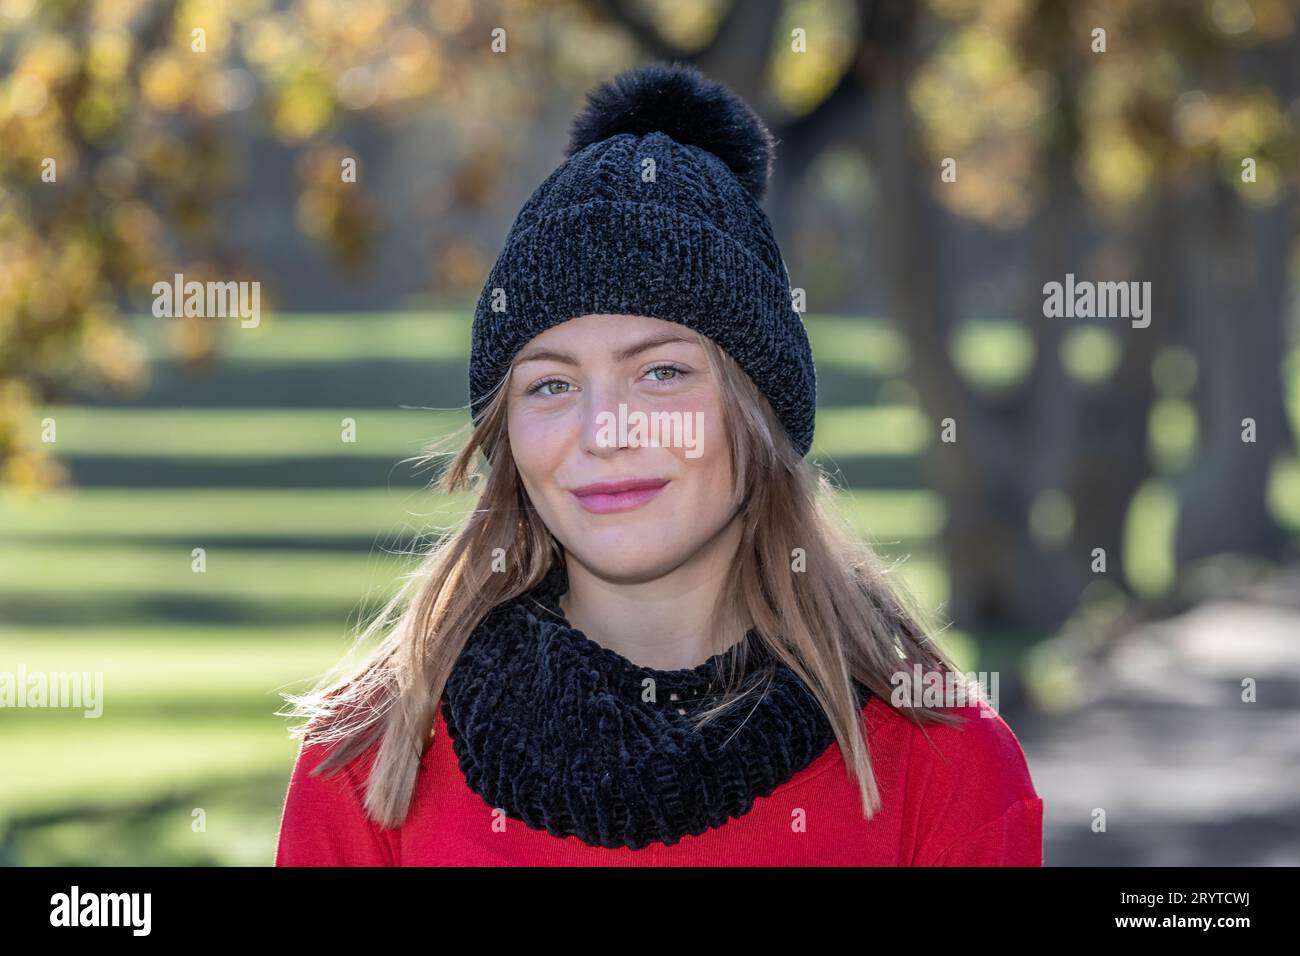 Dans une photo de la tête et des épaules, une superbe jeune femme blonde, portant un chapeau de laine noir et un pull rouge vif, rayonne sous les arbres d'automne Banque D'Images